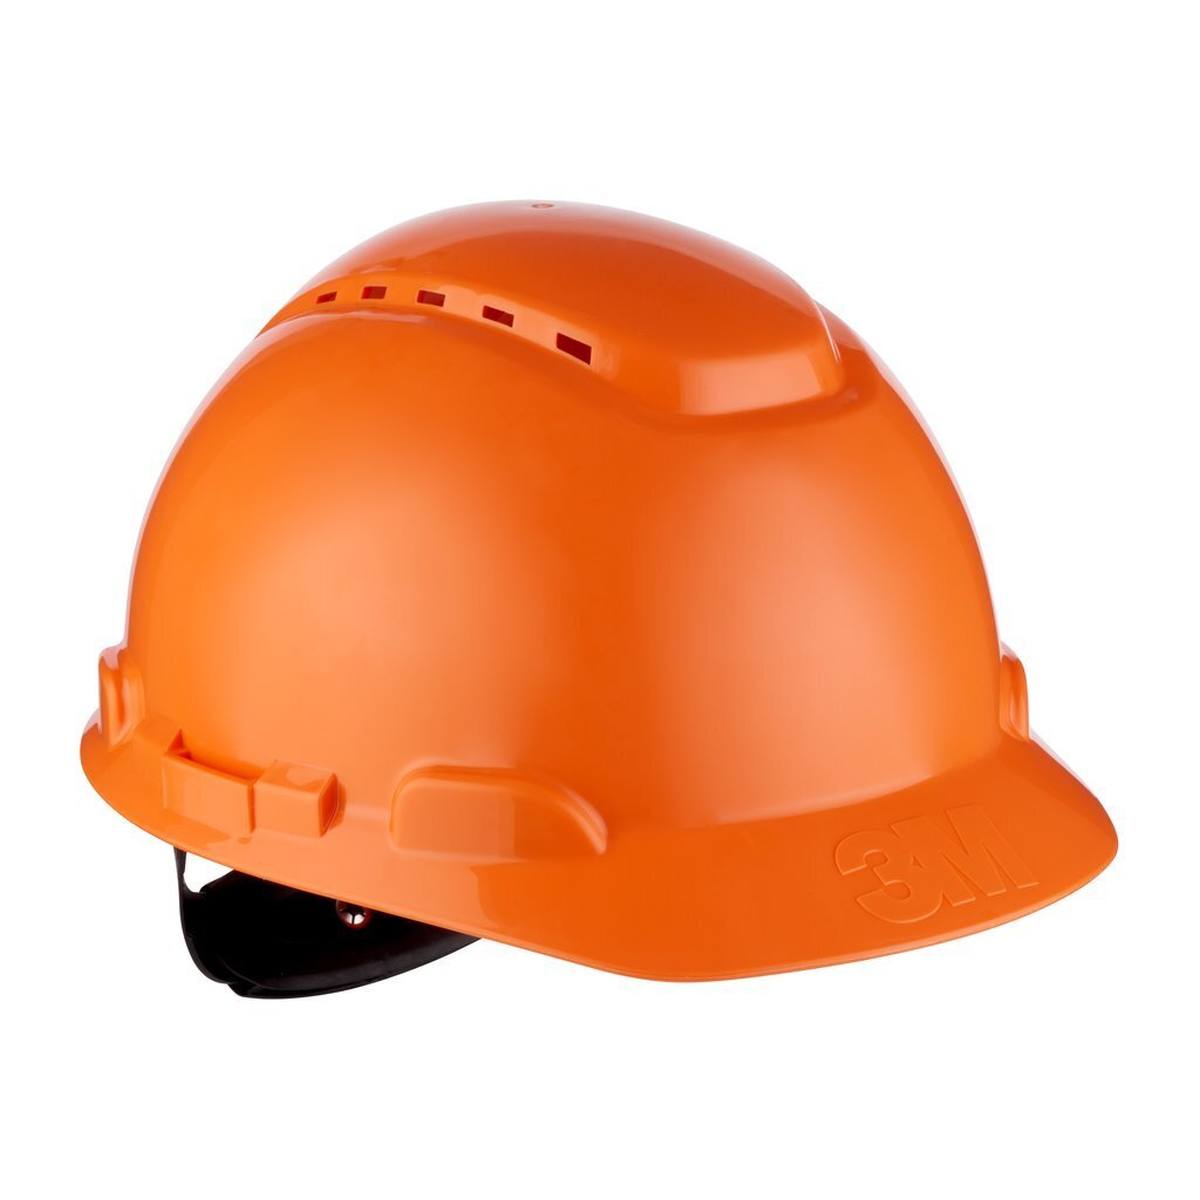 3M Casque de protection série H700 H-700N-OR en orange, ventilé, avec cliquet et bande de soudure en plastique